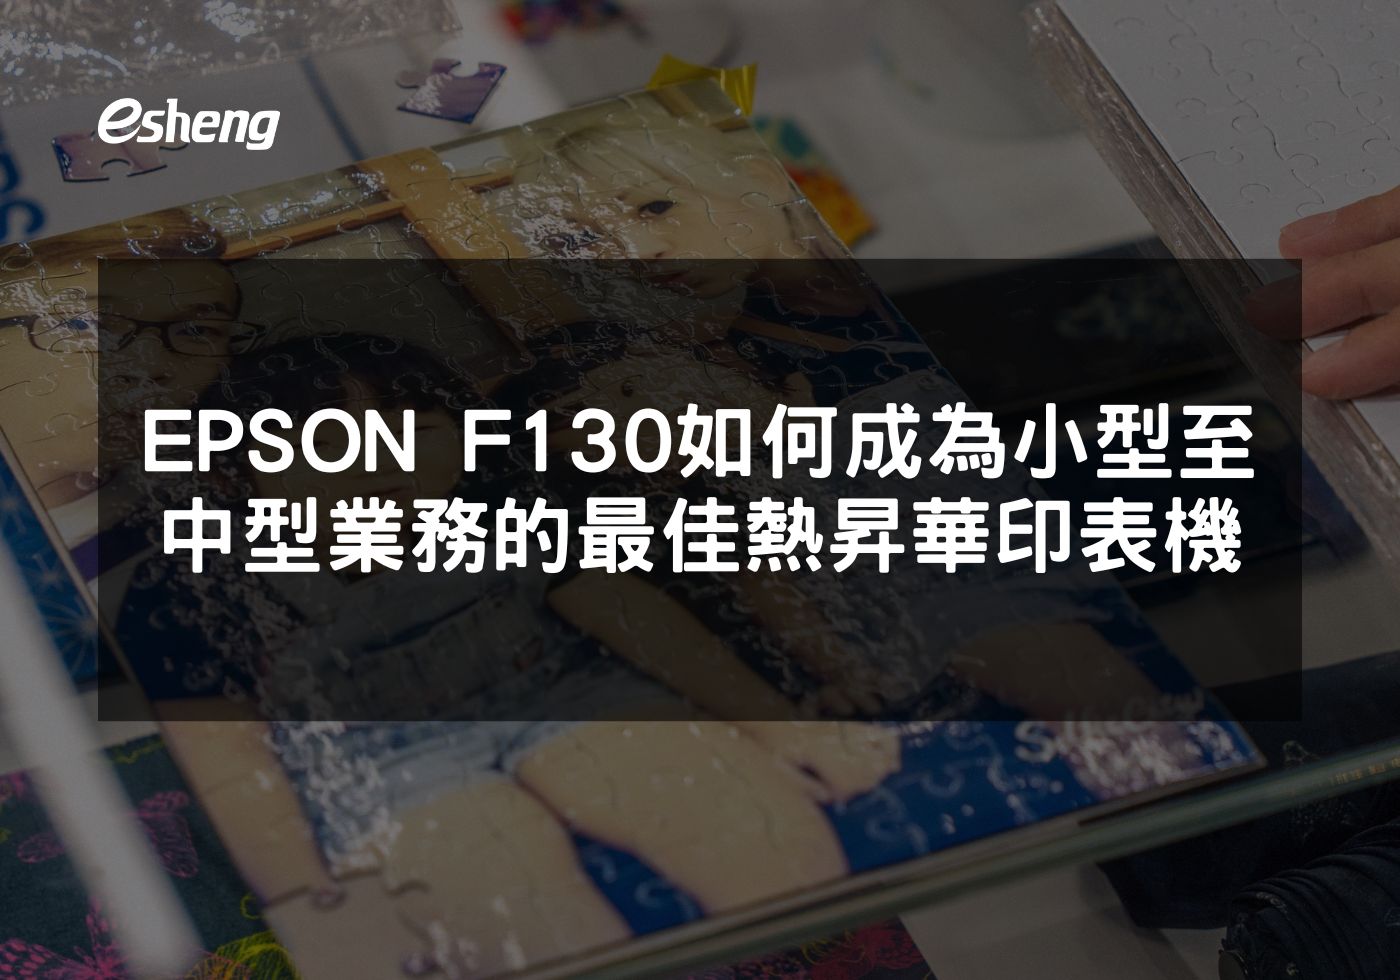 EPSON F130 打印機為中小型業務帶來專業印刷解決方案